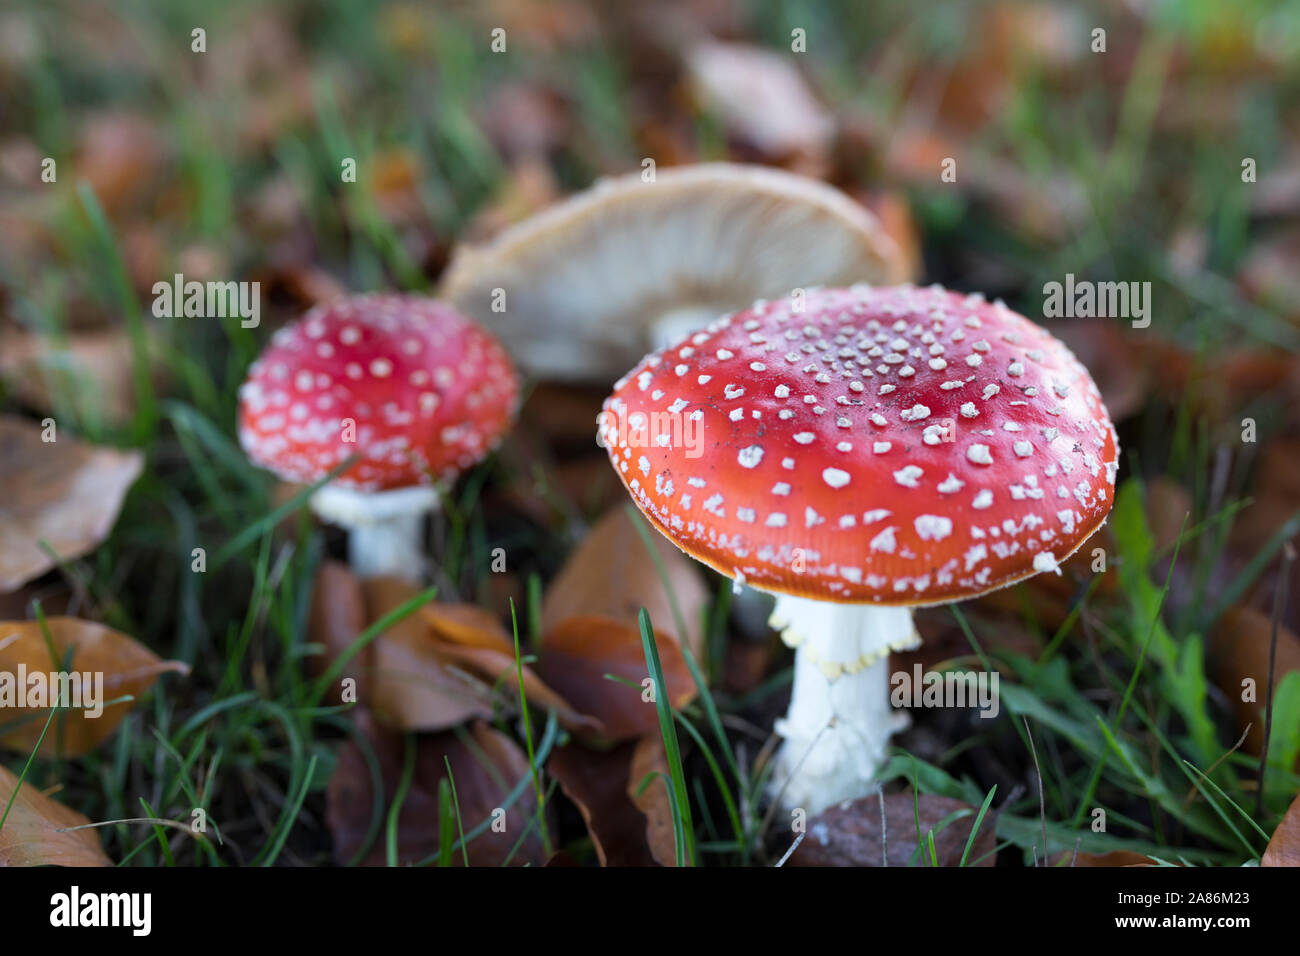 Le rouge et le blanc de champignons agaric fly en plein air en Europe Banque D'Images